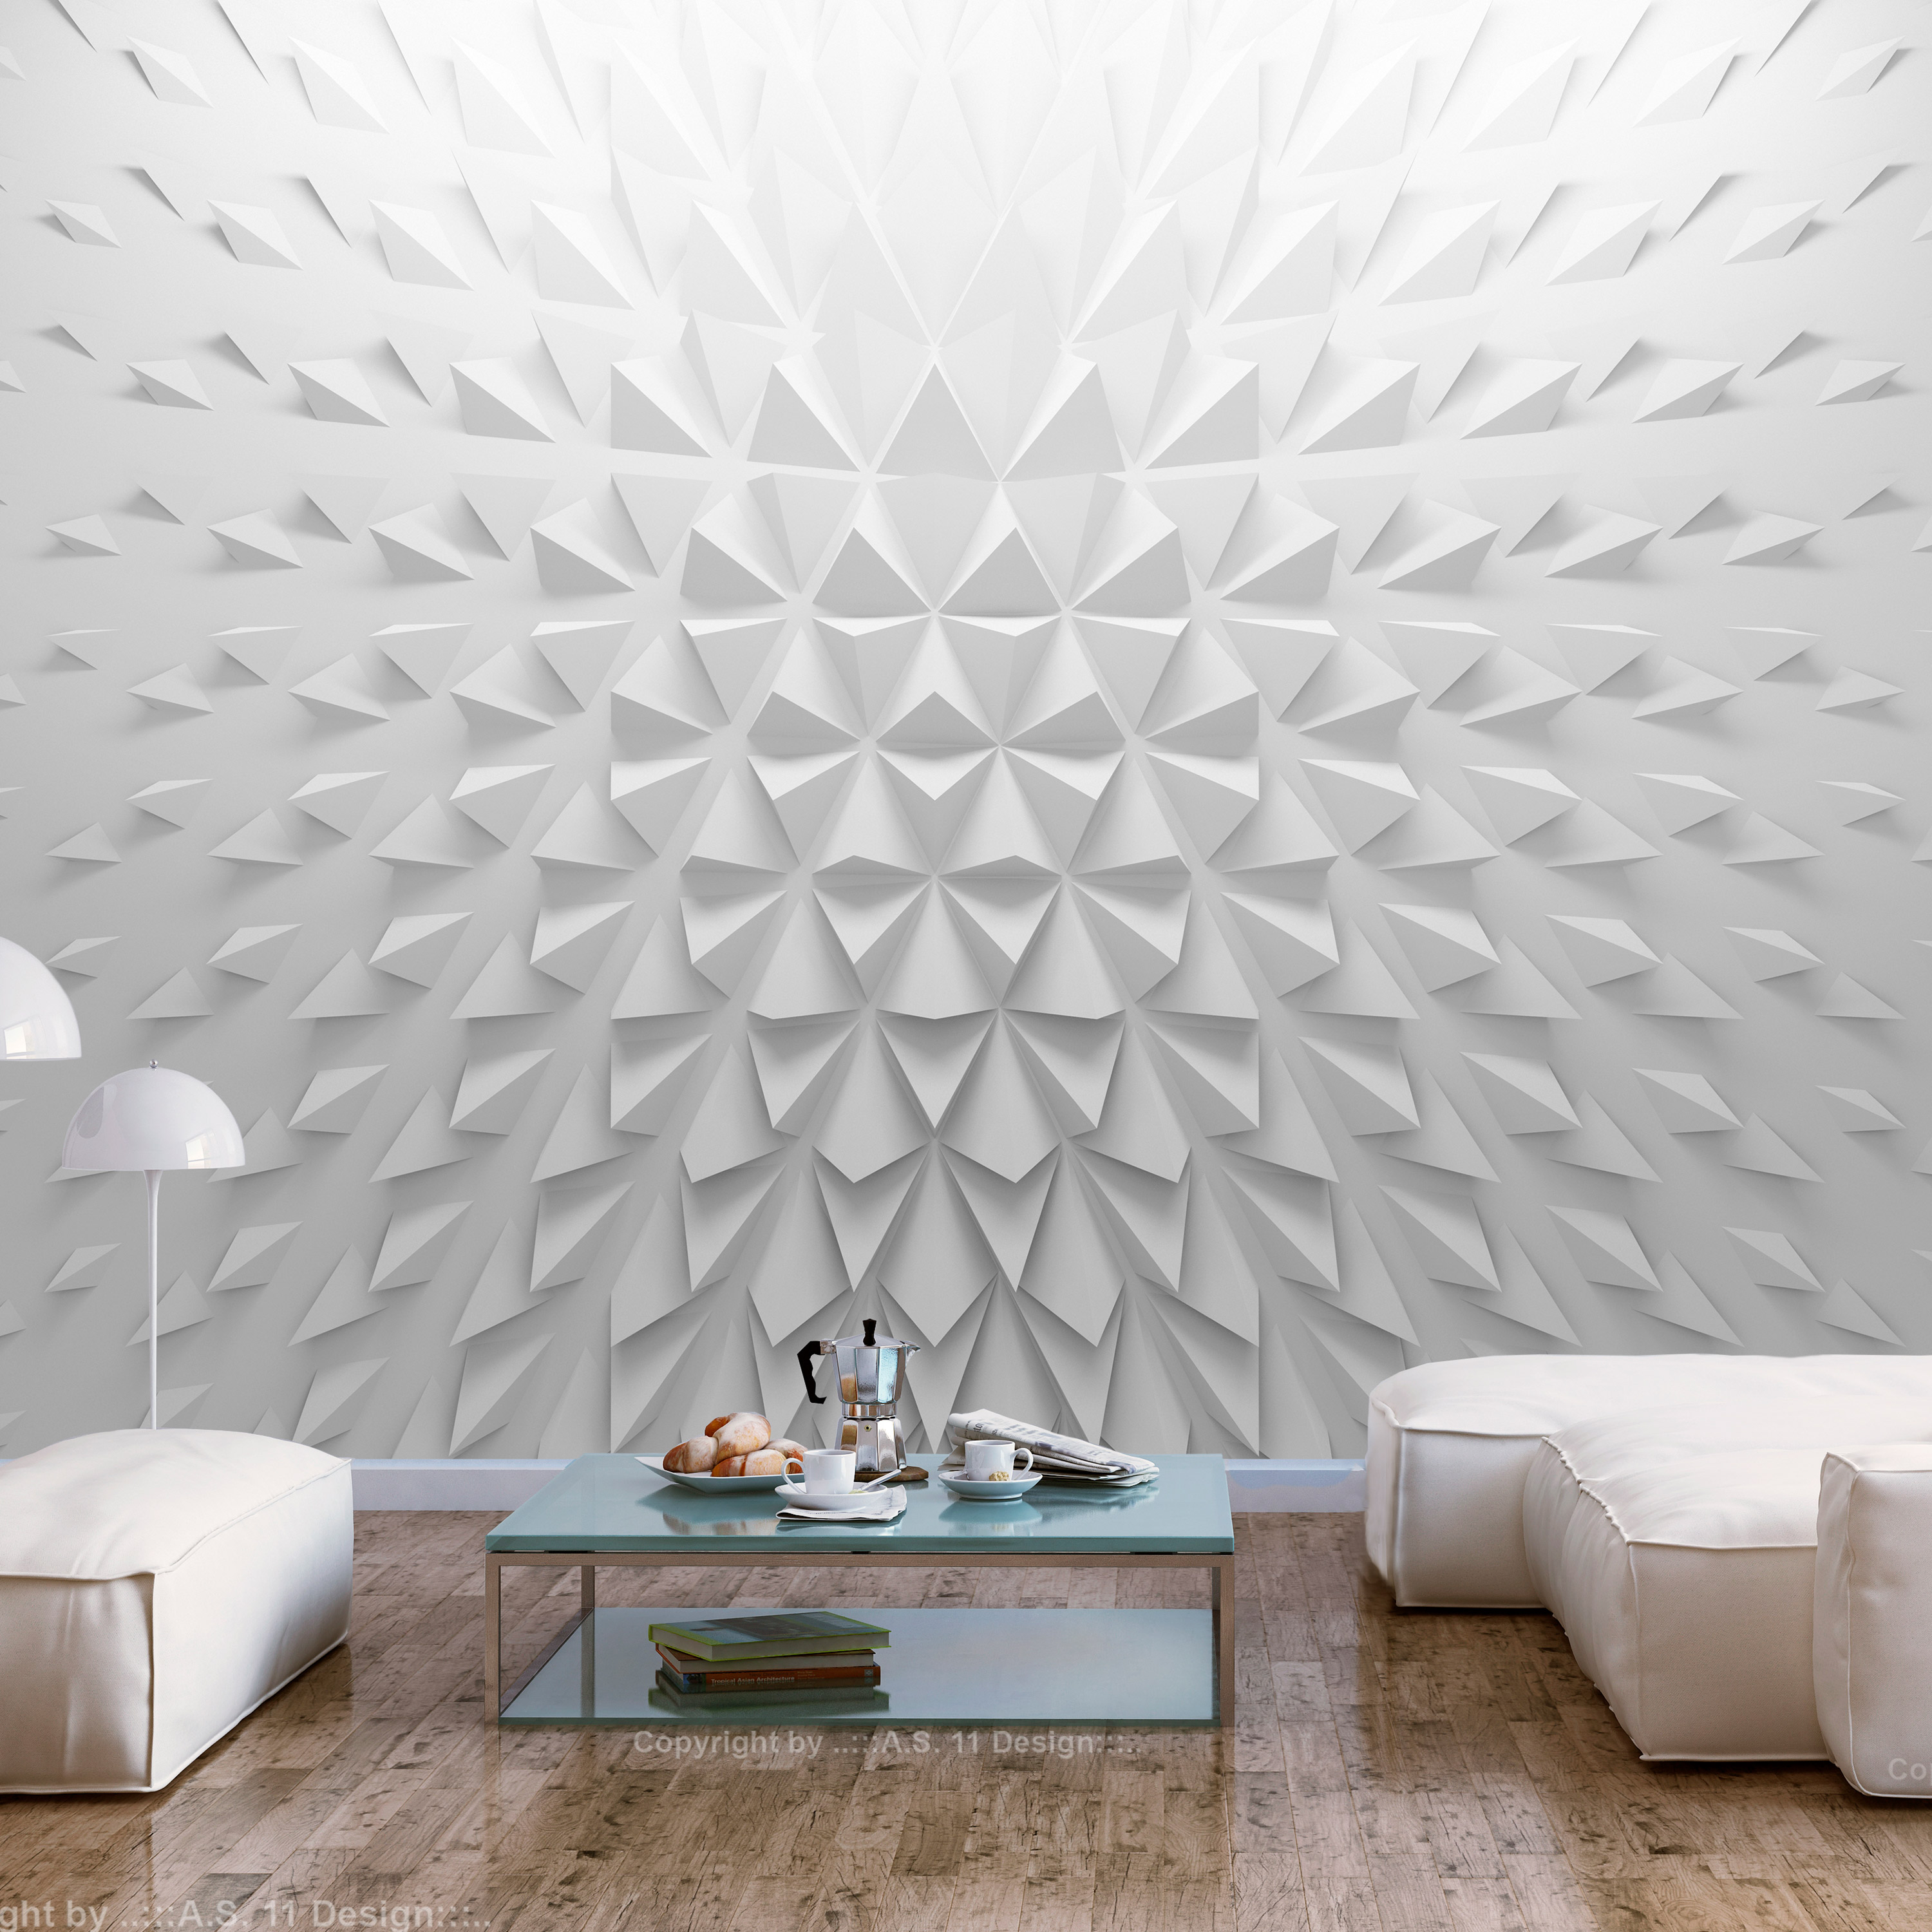 Self-adhesive Wallpaper - Tetrahedrons - 245x175